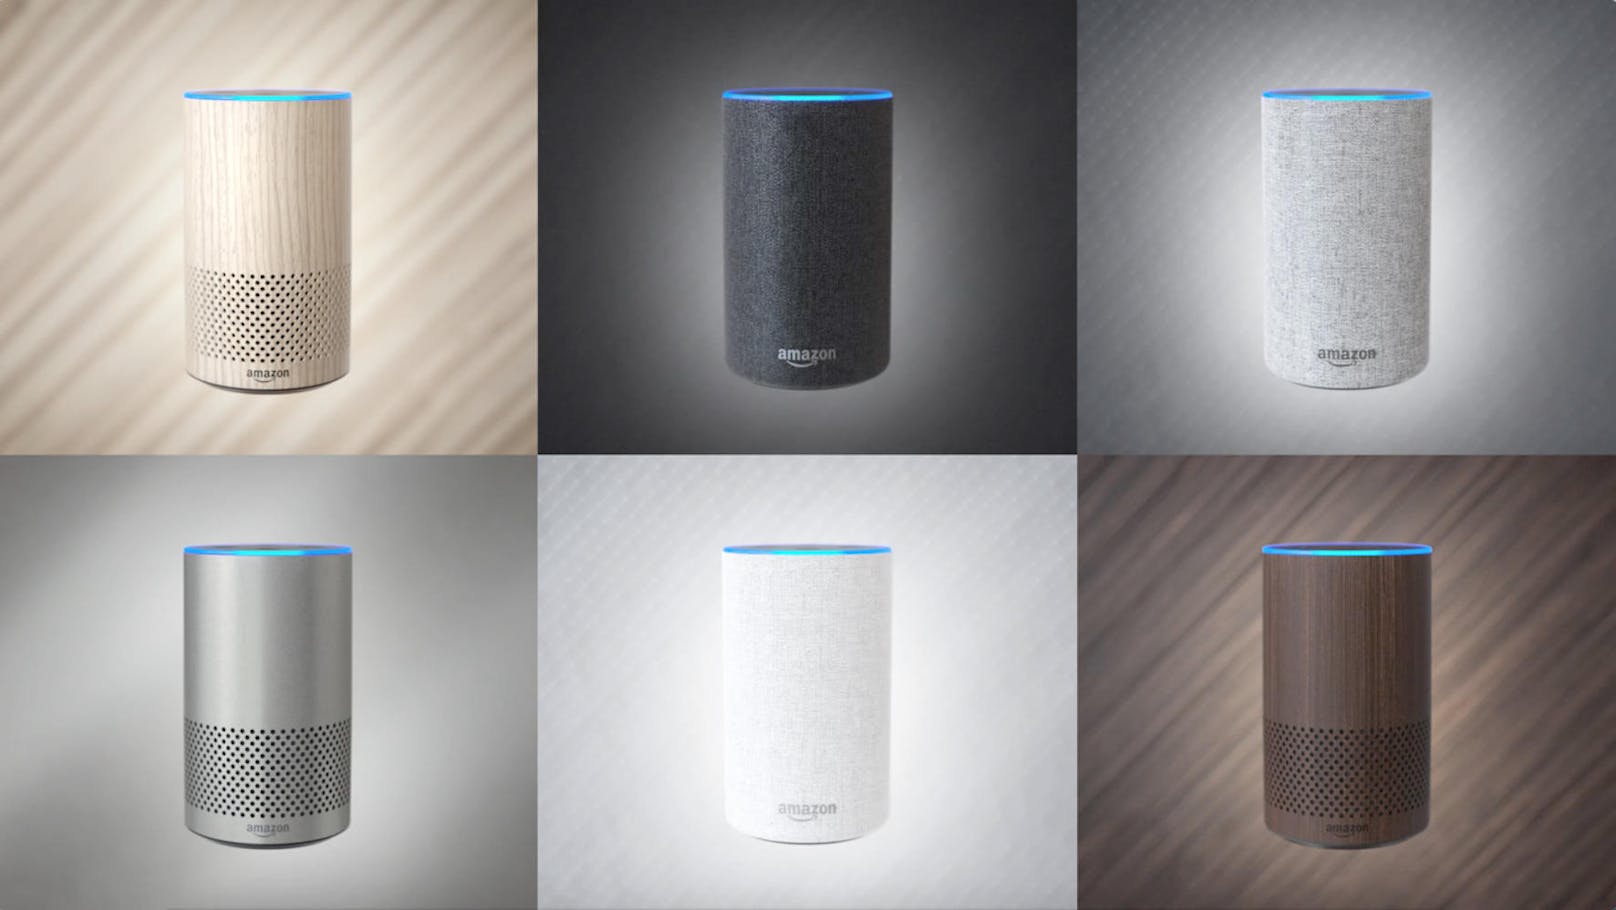 Die zweite Generation von Amazon Echo präsentiert sich im neuen, kompakteren Look und ist in verschiedenen Farben und Oberflächen erhältlich.